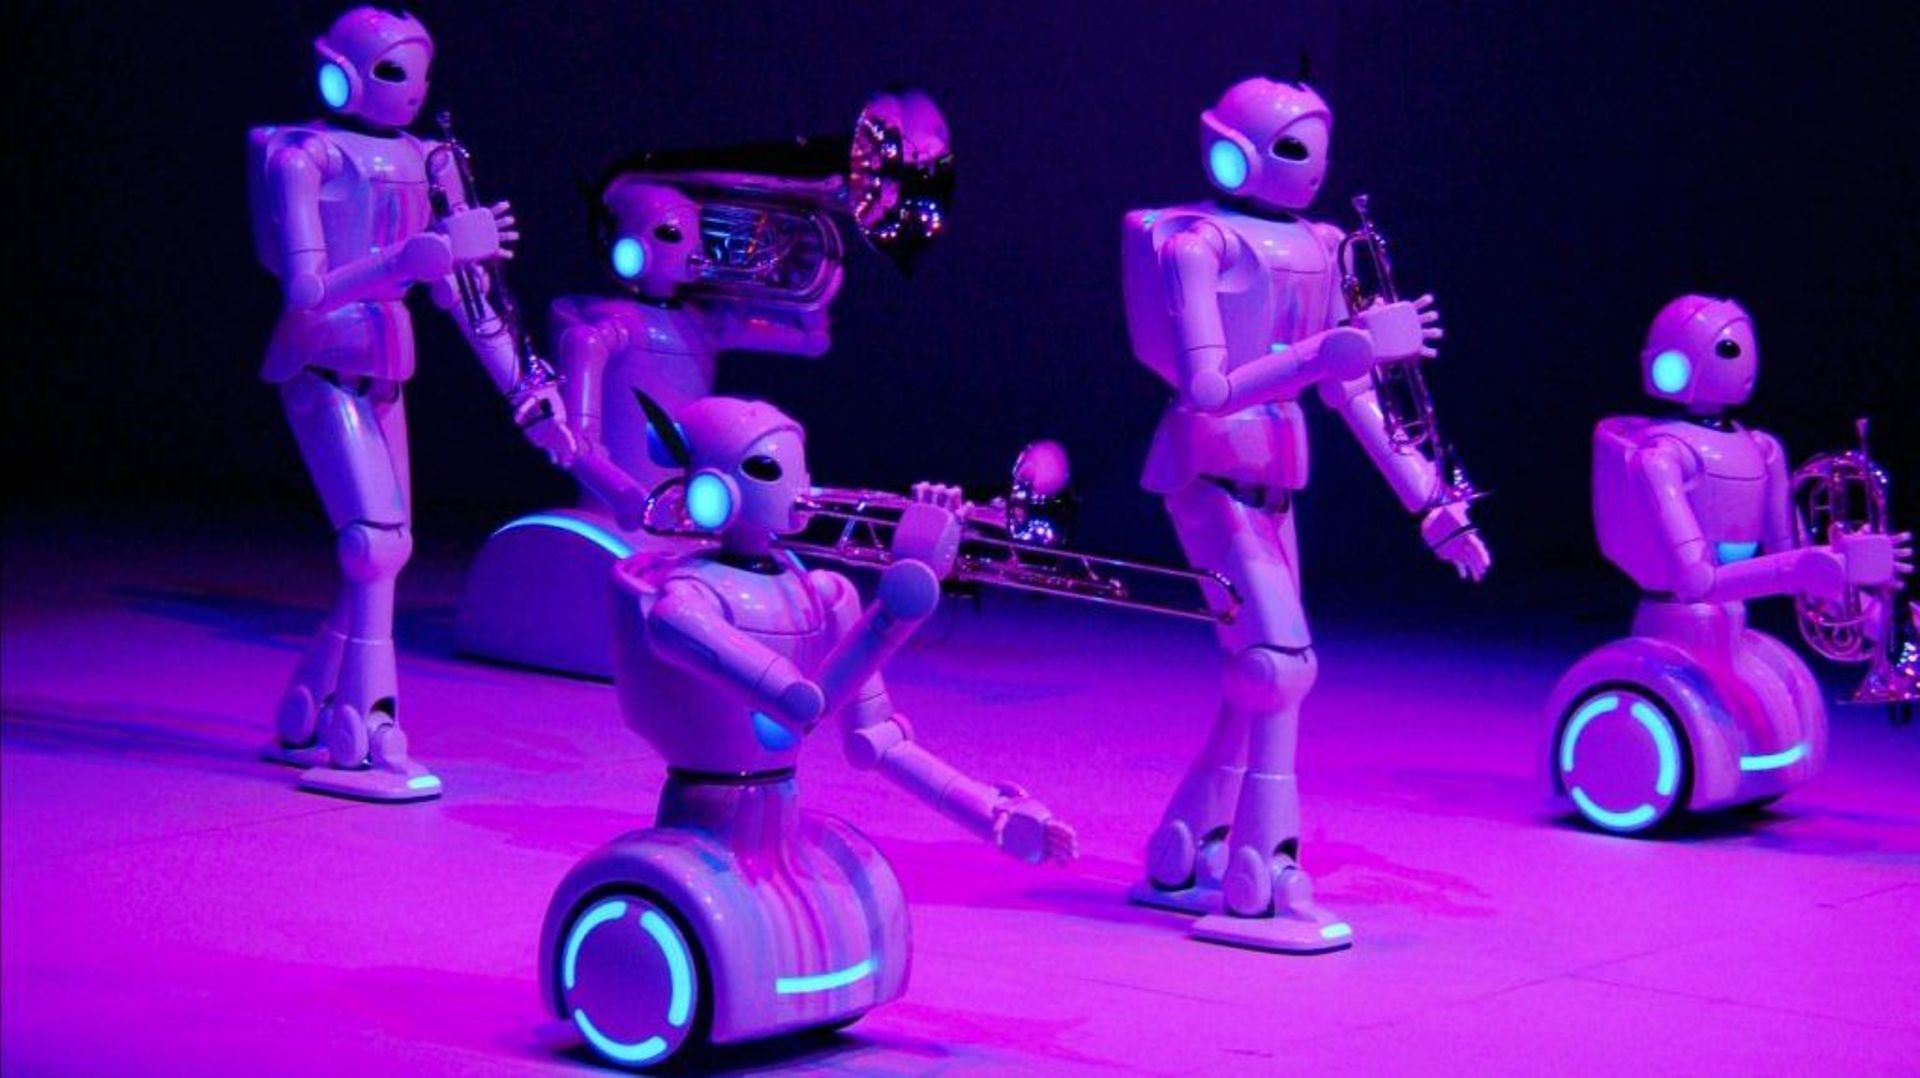 Musique et intelligence artificielle